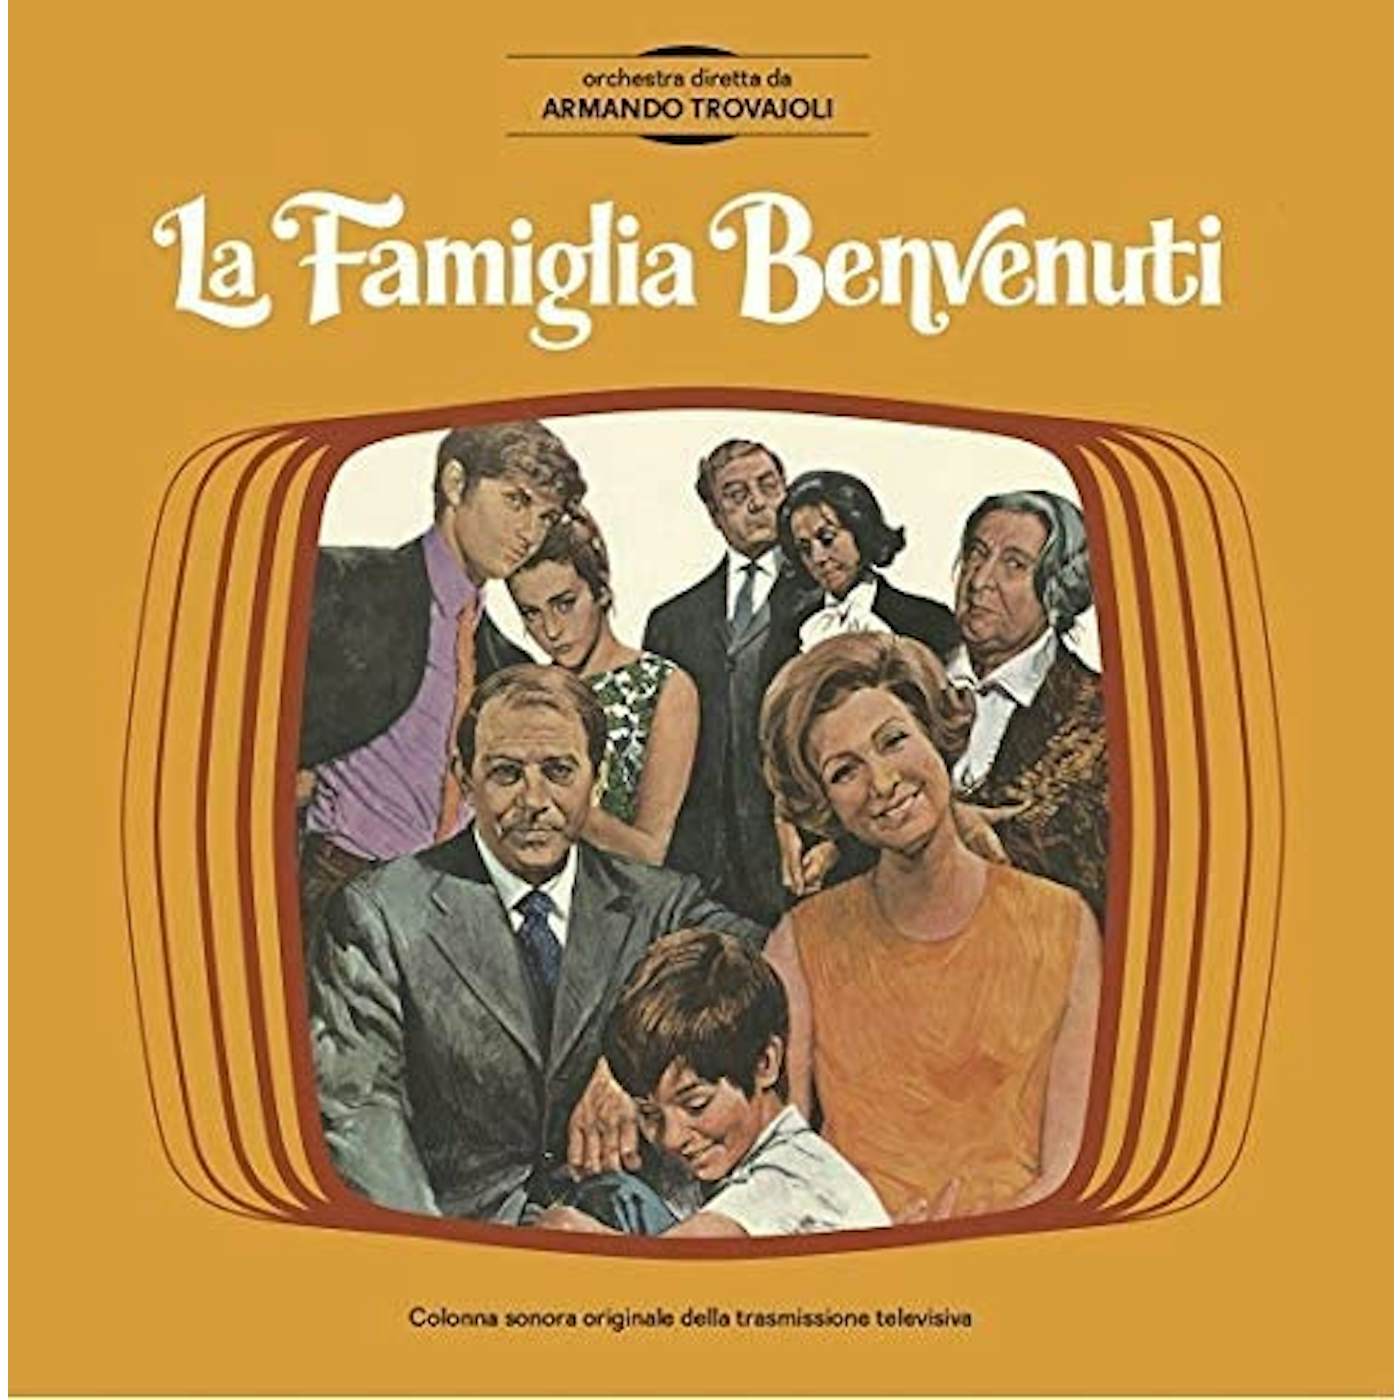 Armando Trovajoli / Marc 4 / I Cantori Moderni LA FAMIGLIA BENVENUTI / O.S.T. Vinyl Record